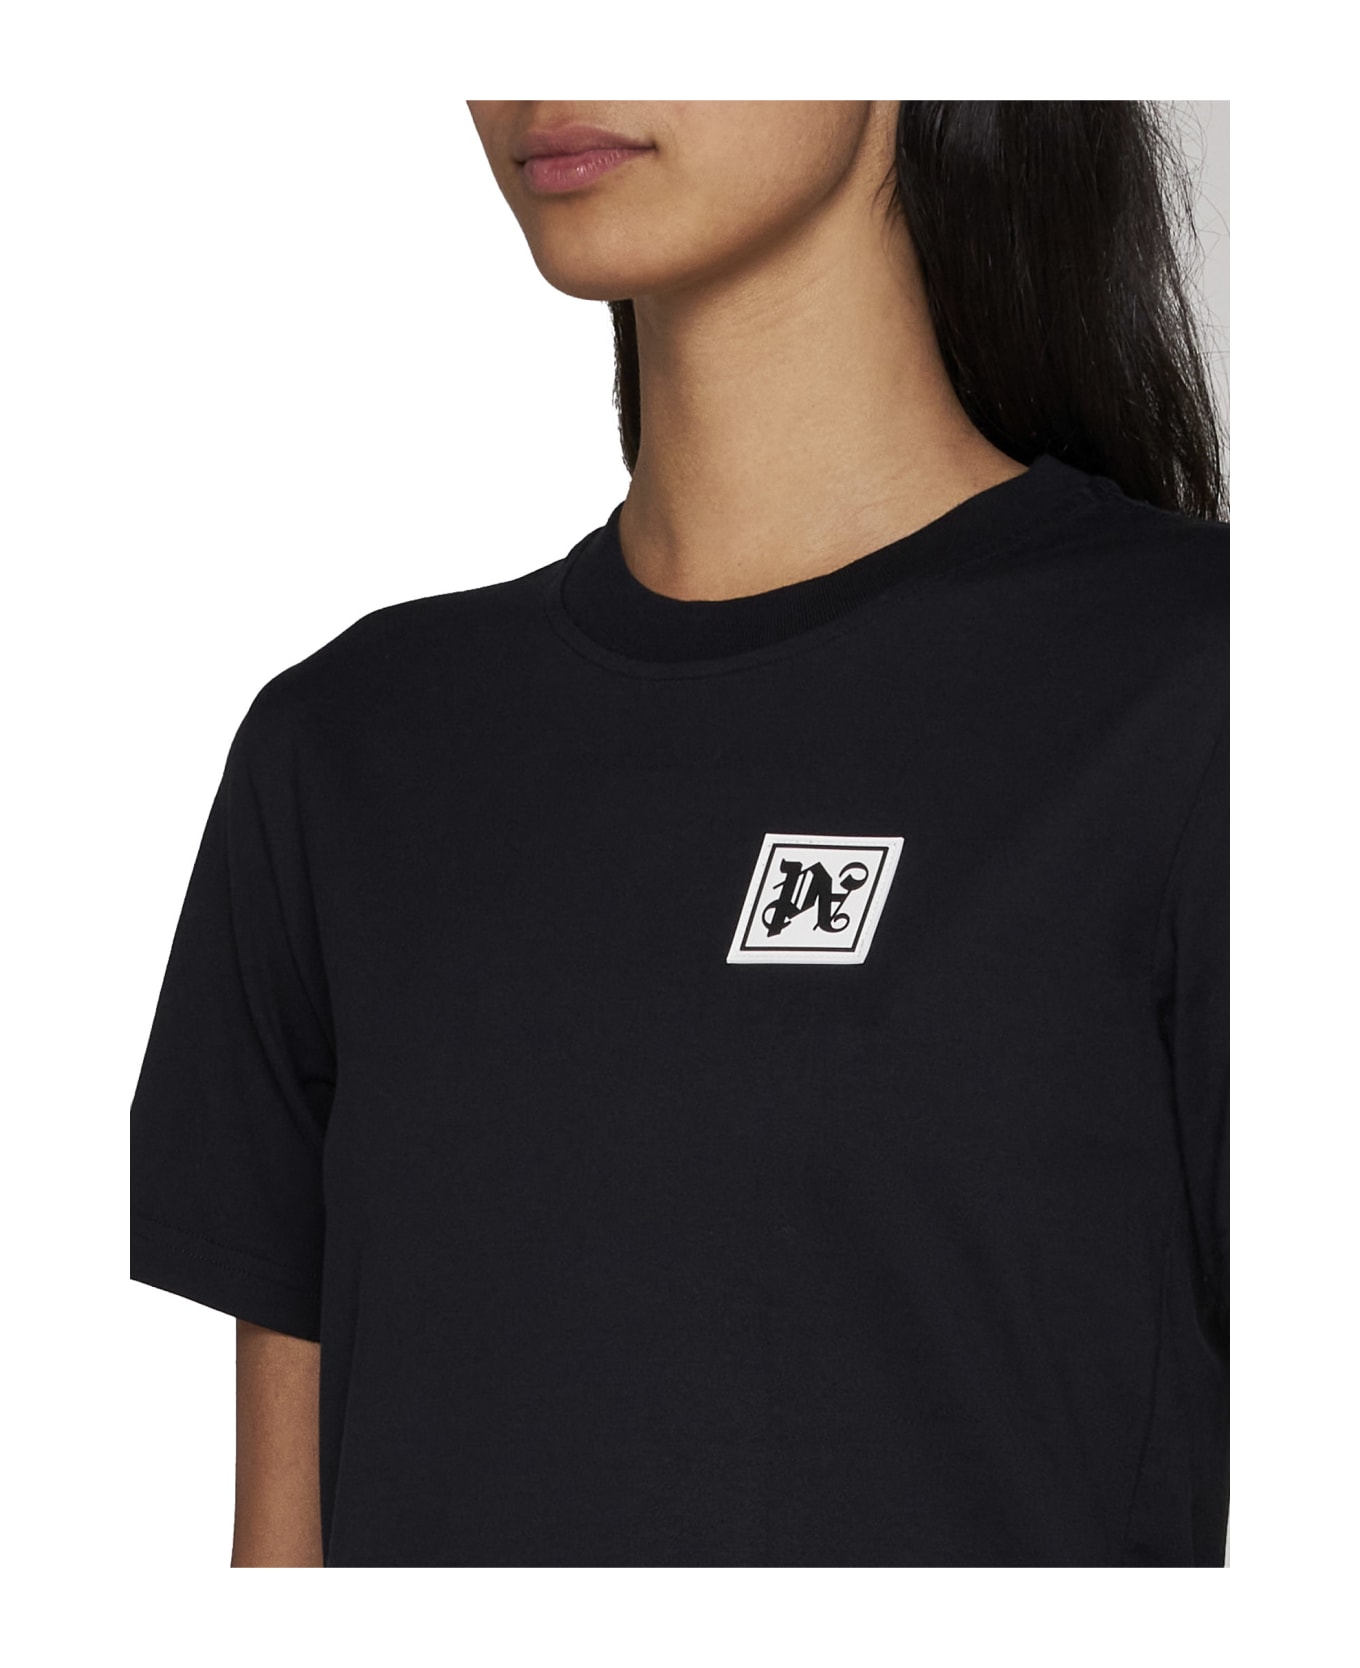 Palm Angels Ski Club T-shirt - BLACK WHITE (Black)